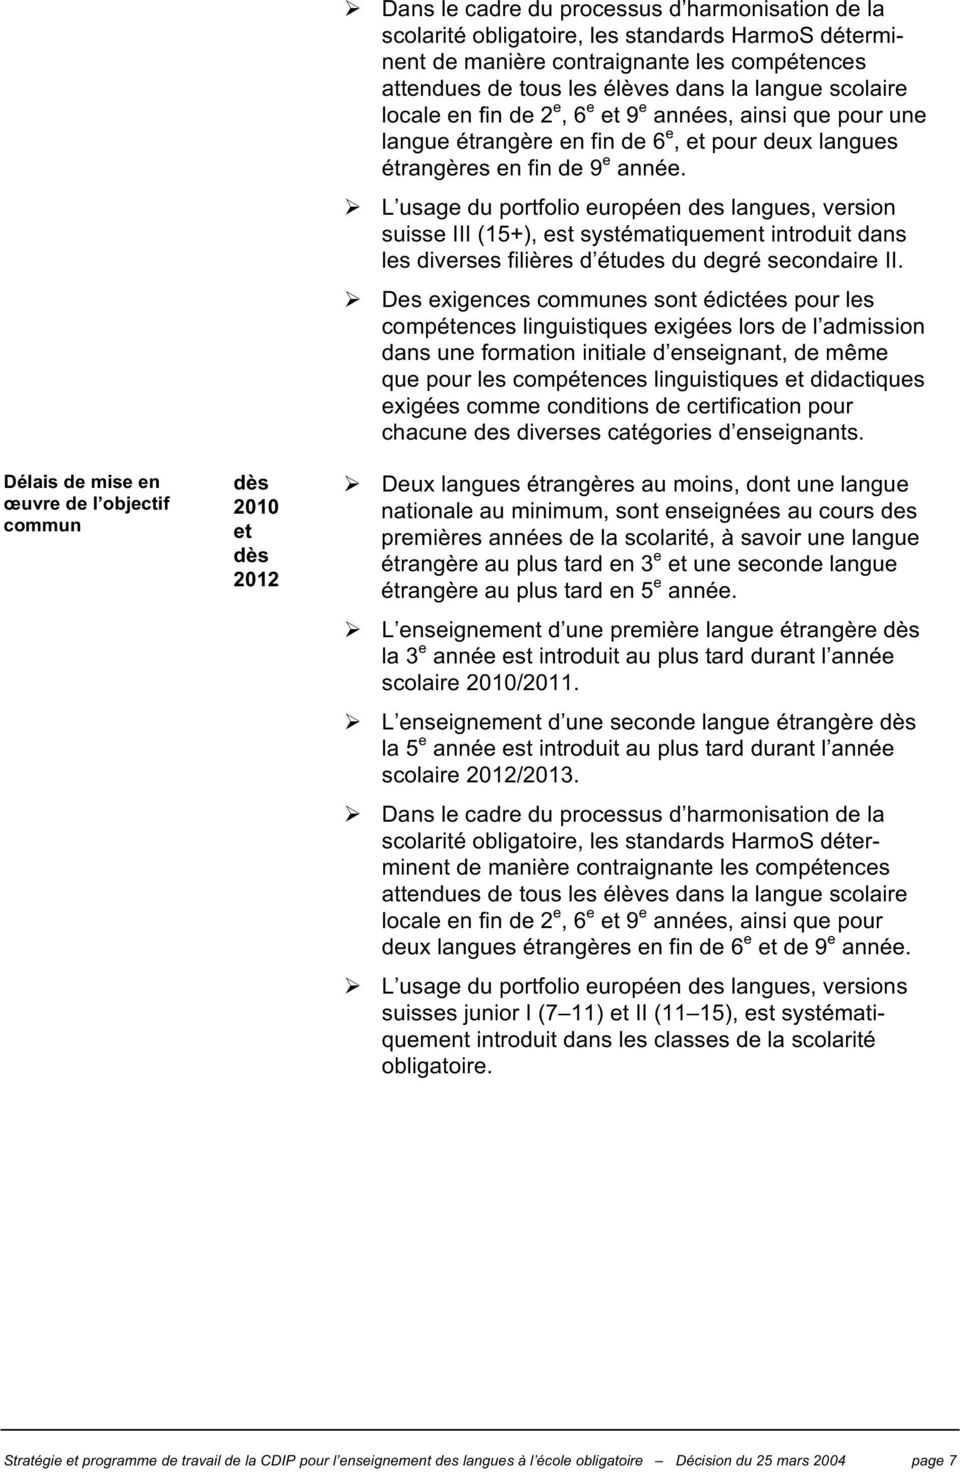 9 e année. L usage du portfolio européen des langues, version suisse III (15+), est systématiquement introduit dans les diverses filières d études du degré secondaire II.